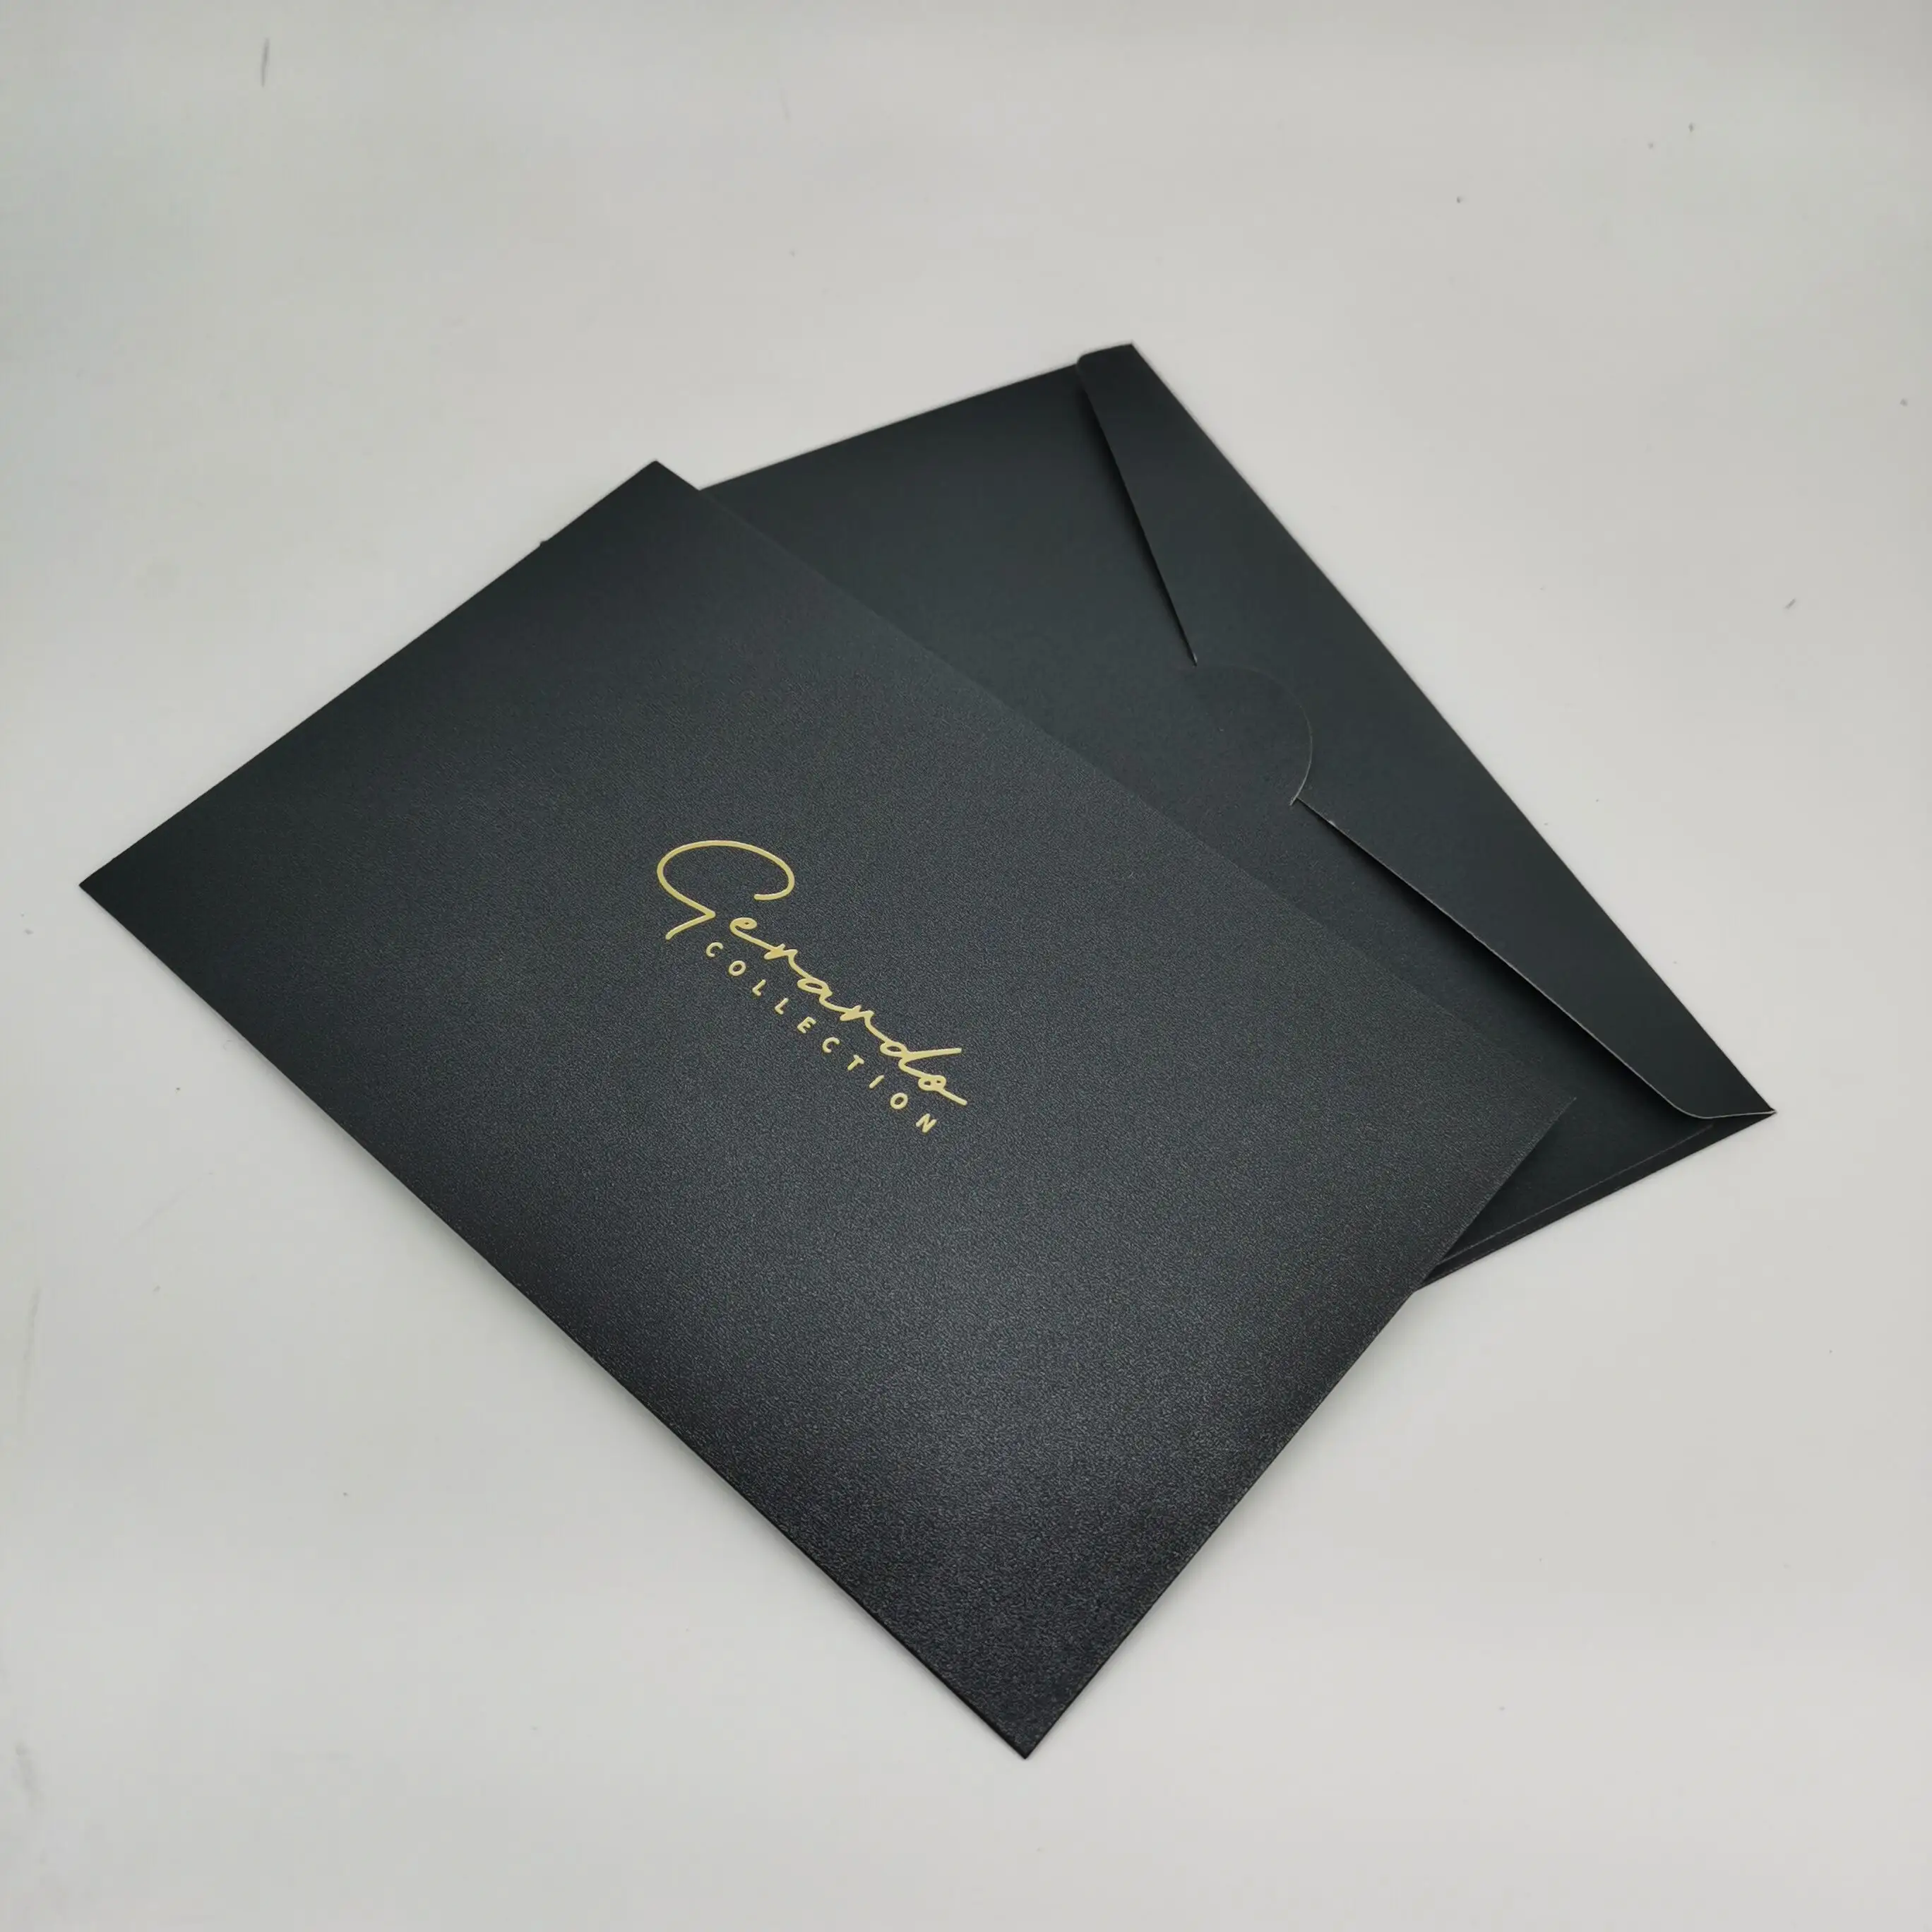 Vente chaude Logo personnalisé feuille d'or estampage enveloppes biodégradables Art papier emballage enveloppe merci cartes ensemble enveloppes